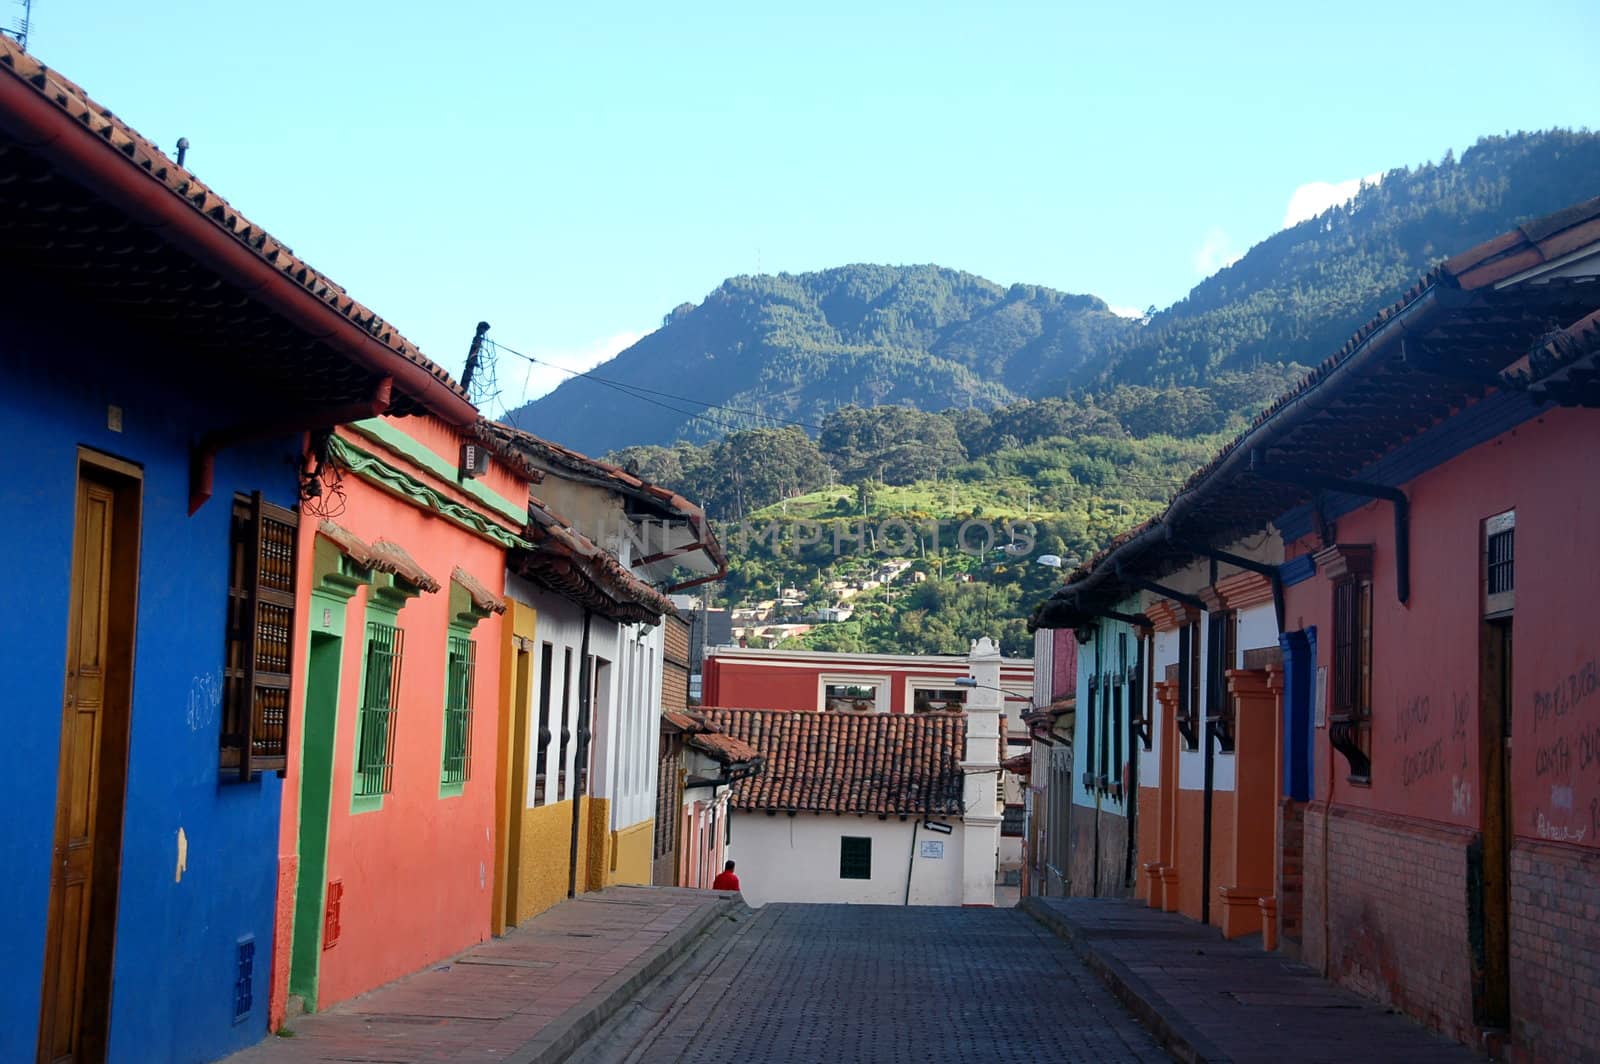 Cobblestone street in Bogota by cosmopol